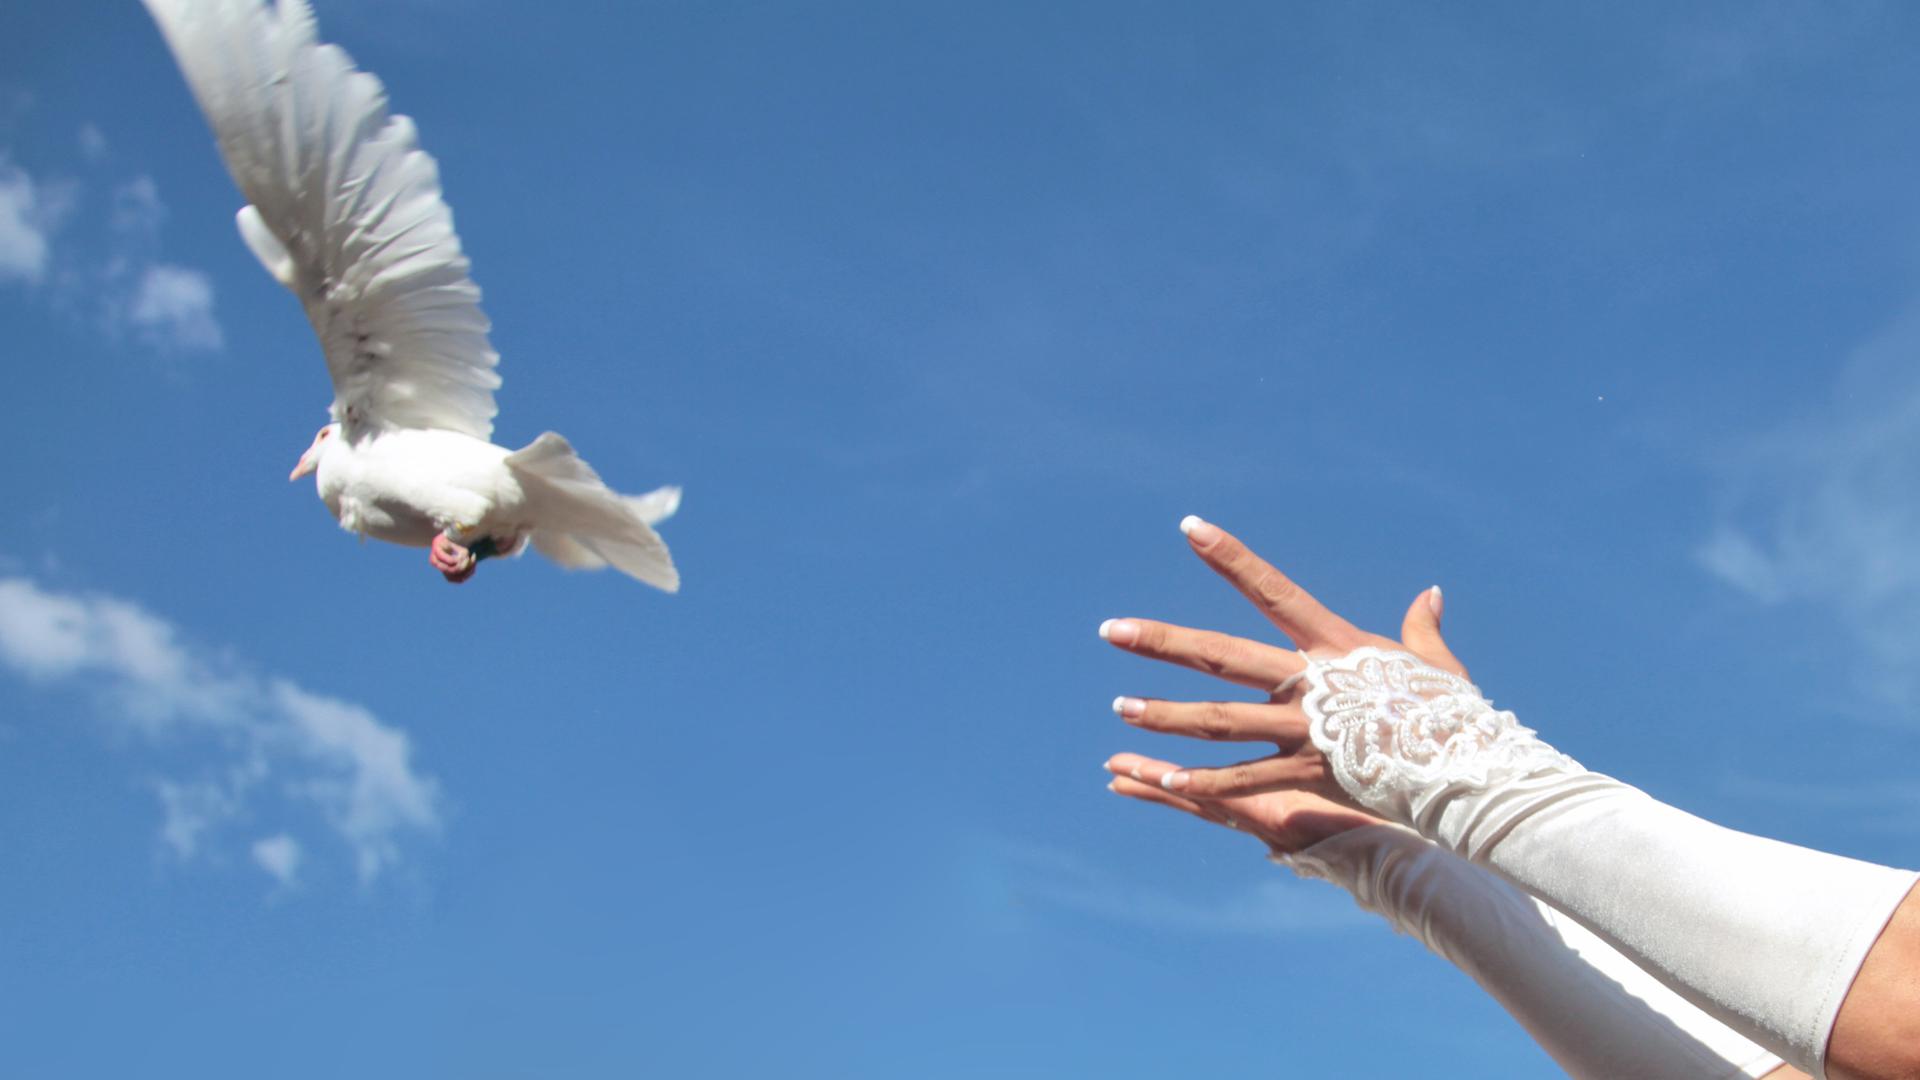 Freiflug mit guten Wünschen: Nach der Trauung lassen Hochzeitspaare weiße Tauben in die Luft als Symbol für Treue. Brieftaubenzüchter trainieren die Tiere, damit sie wieder in ihrem Heimatschlag zurückfinden.